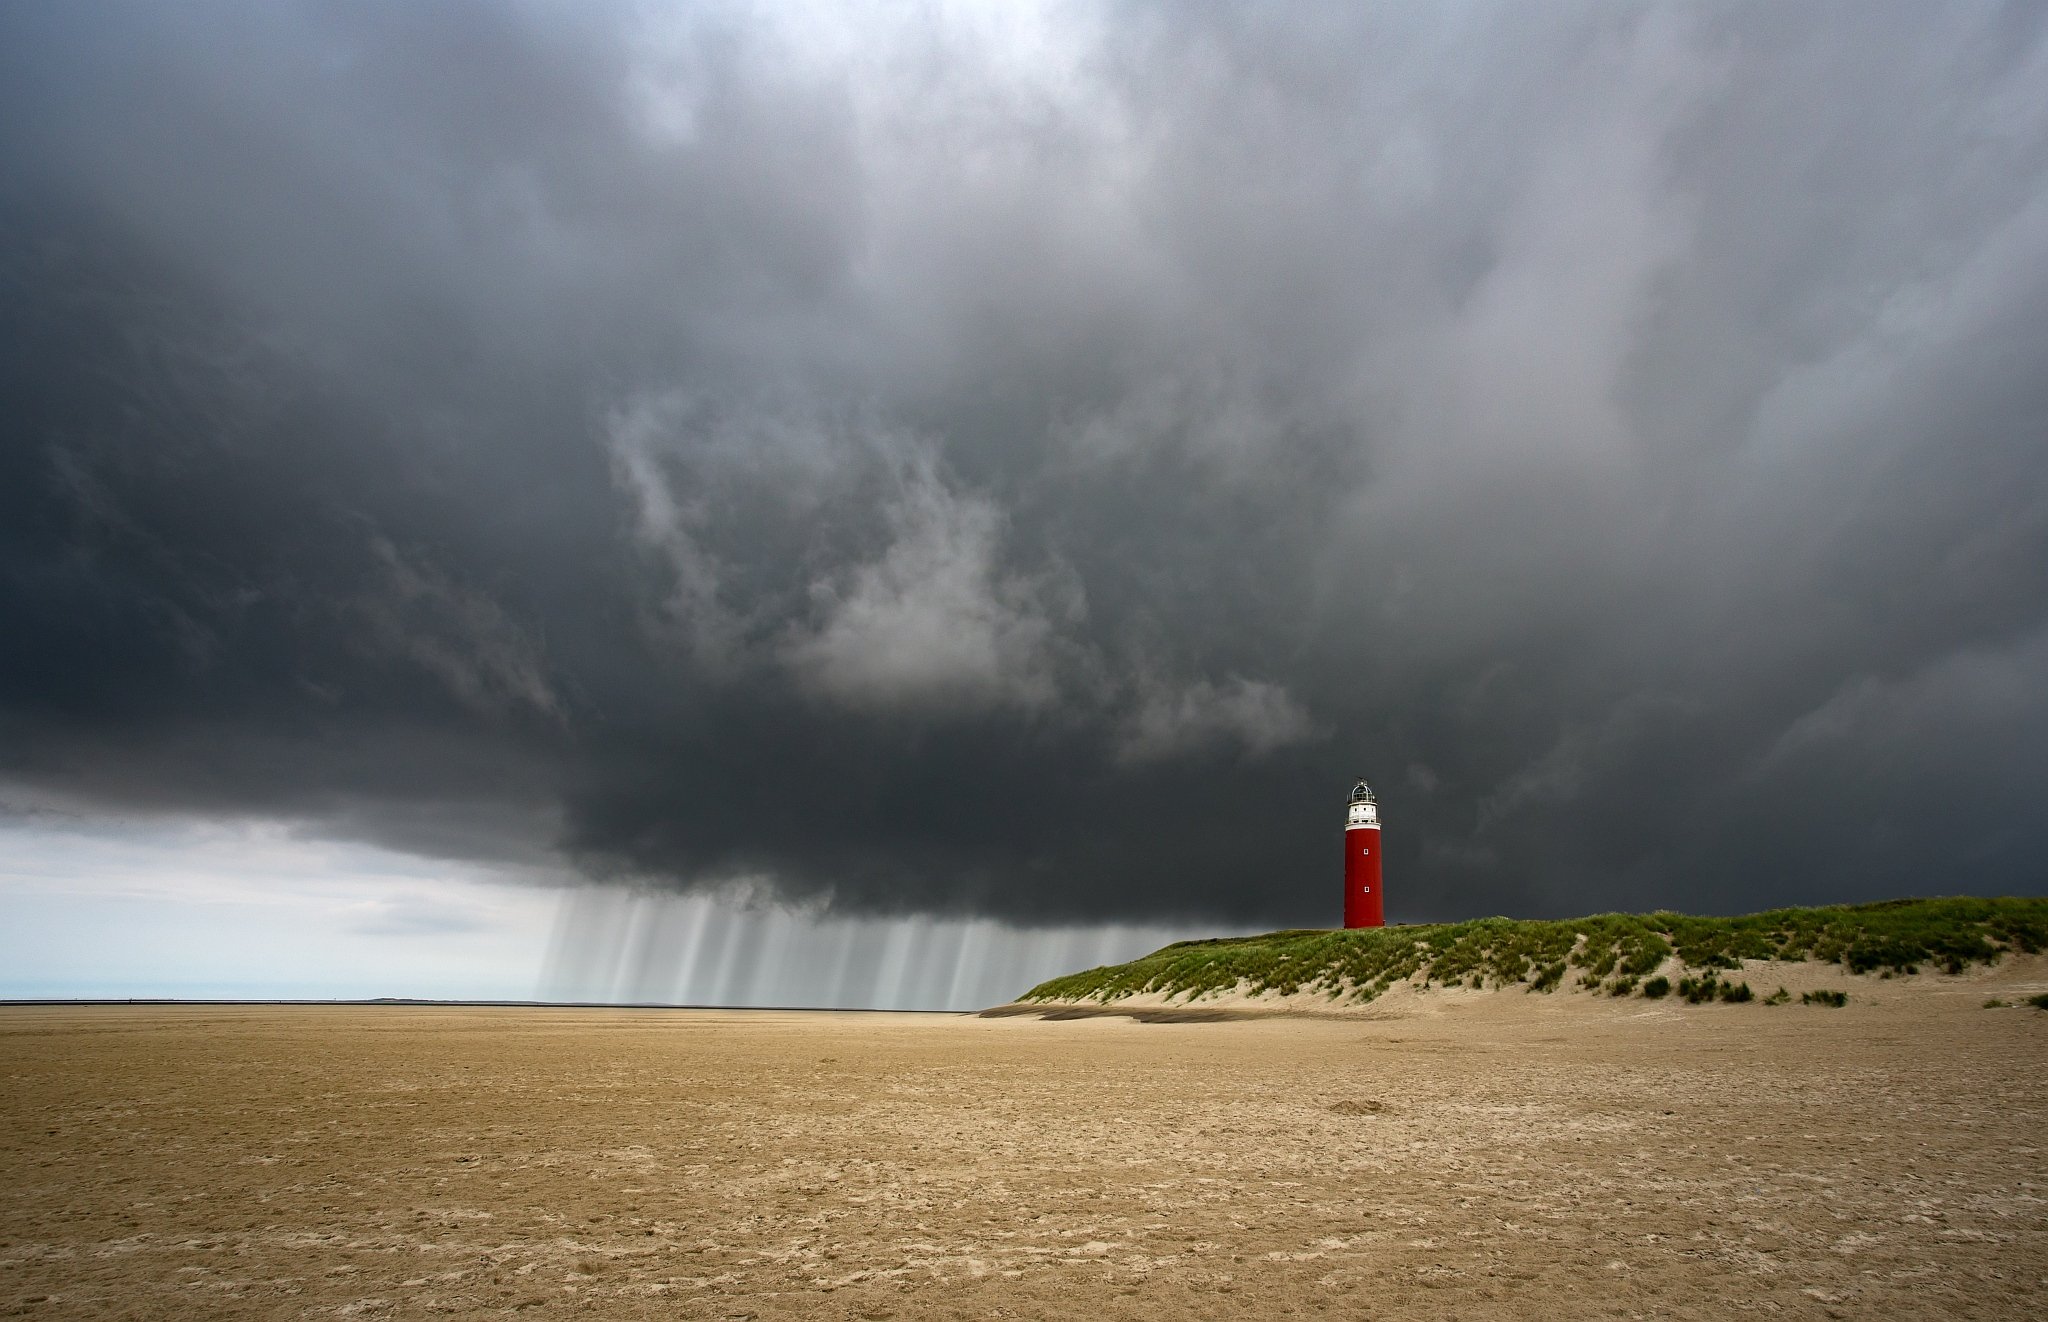 маяк, дождь, гроза, циклон, погода, море, пляж, Evgeni Tcherkasski